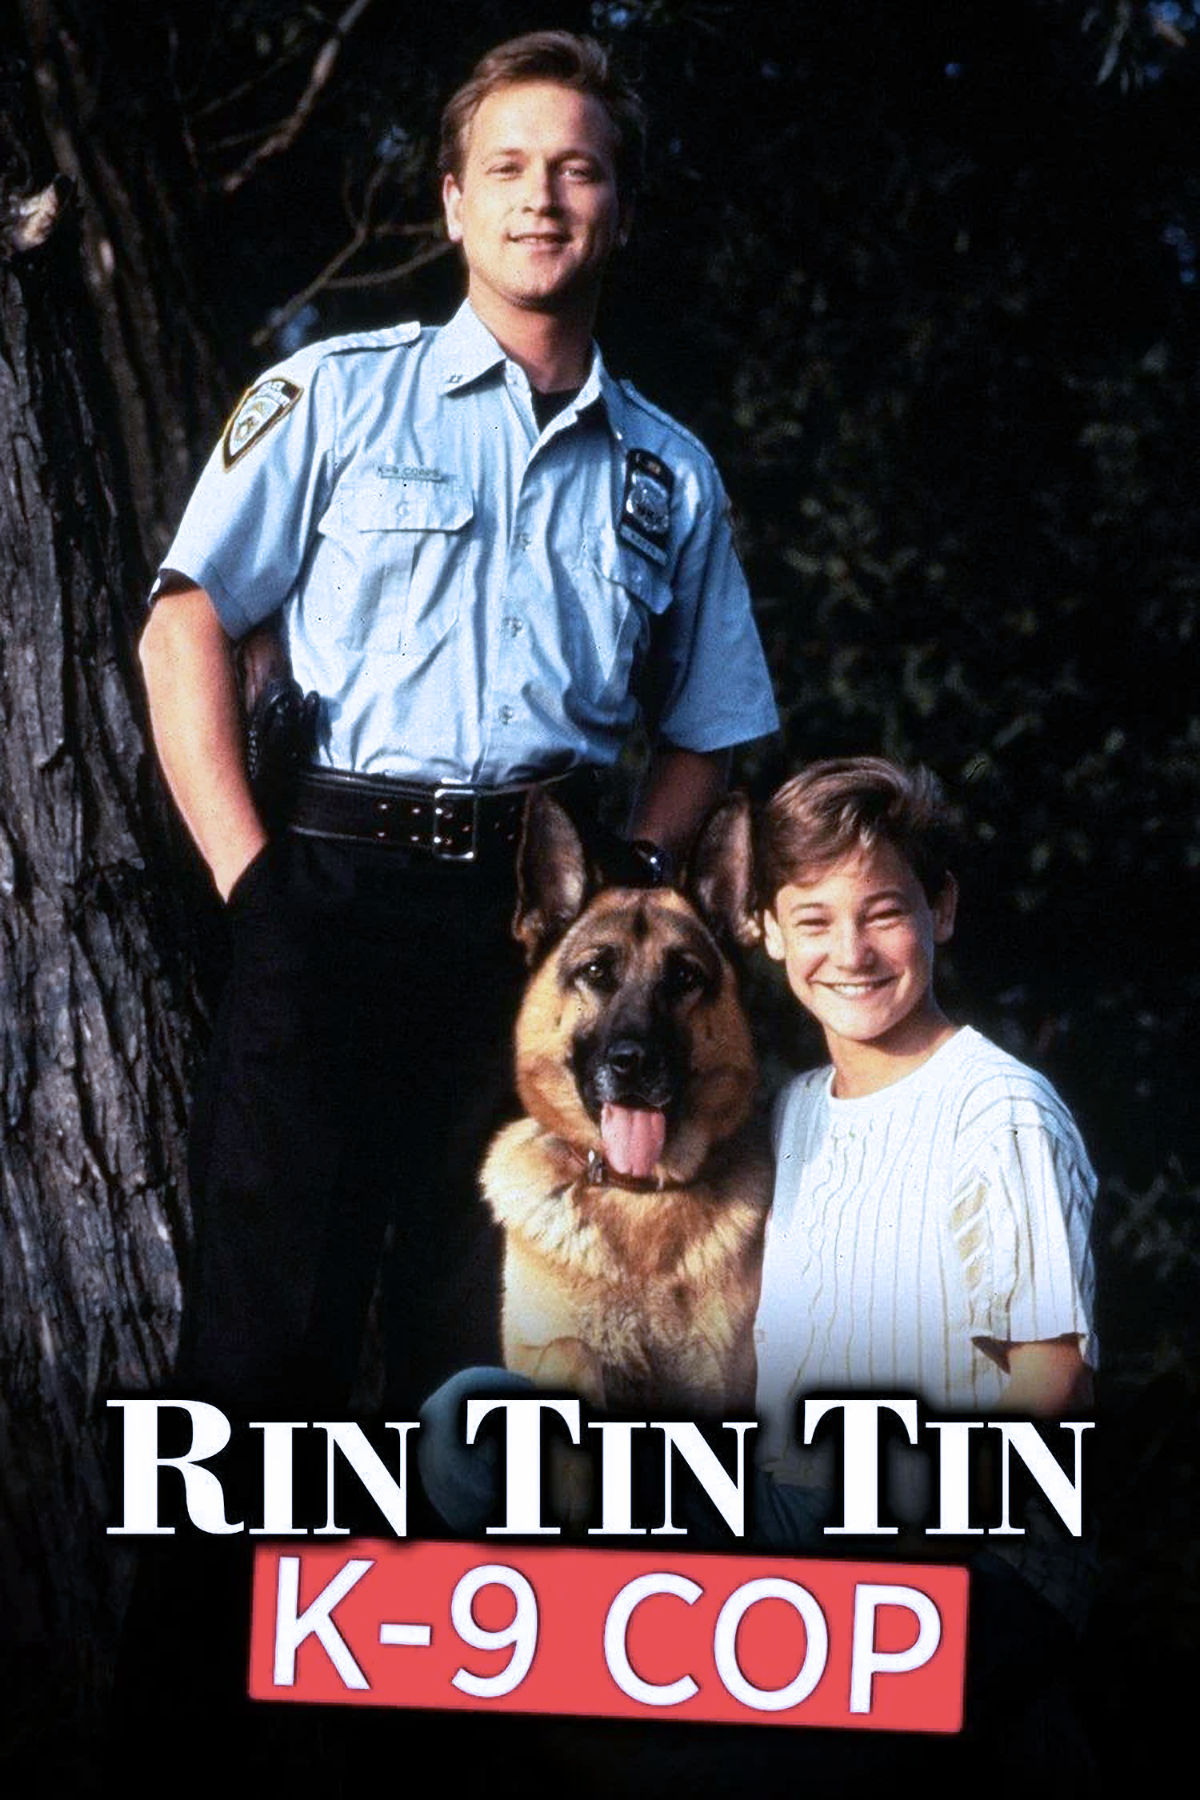 Rin Tin Tin K9 Cop - aka Katts and Dog - Promo Poster 02
Keywords: rin_tin_tin_k9_cop_media;media_promo